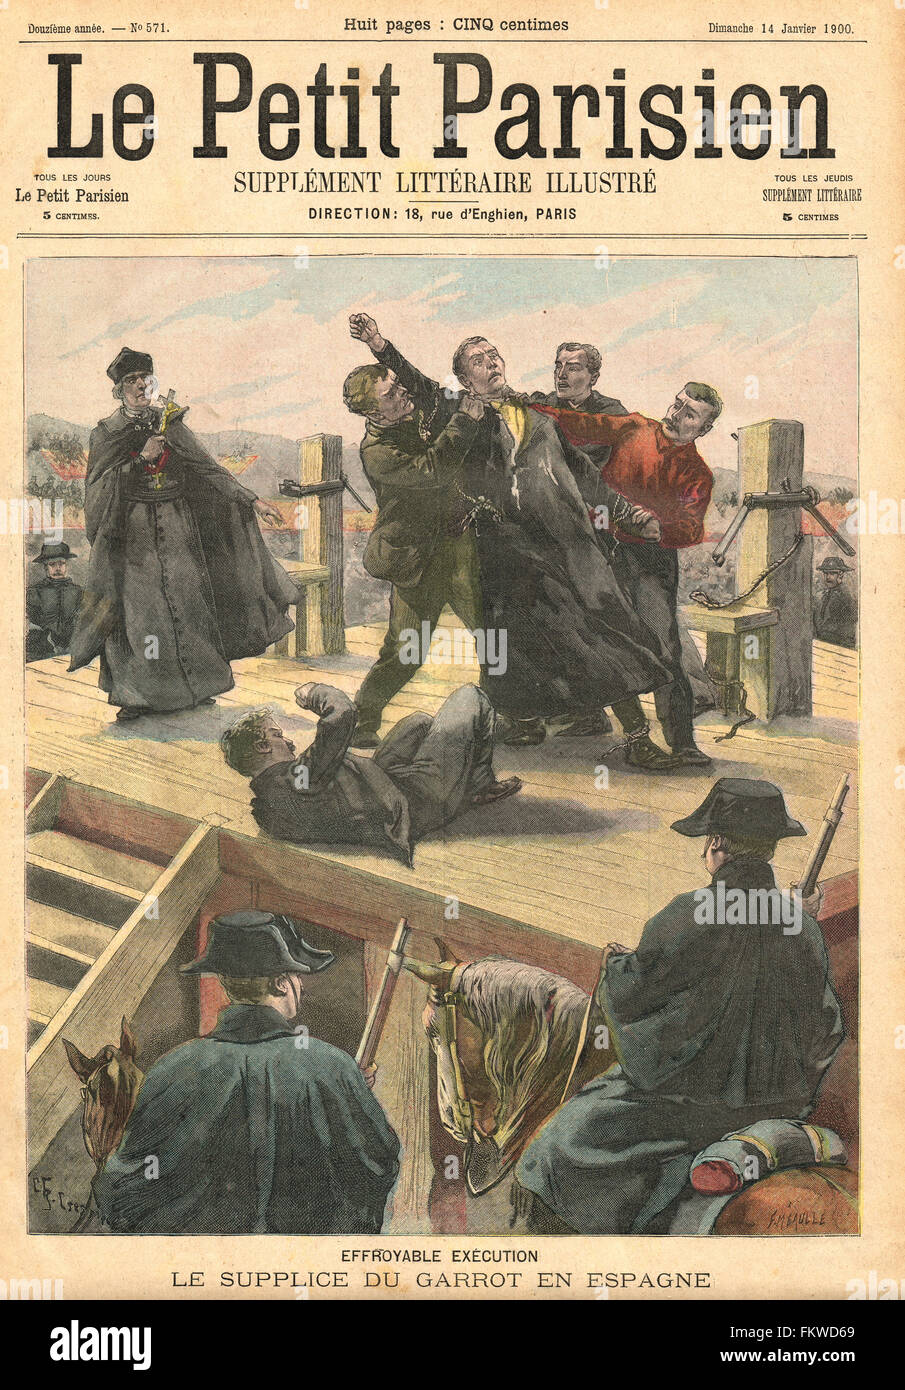 Hinrichtung durch Erdrosseln in Spanien 1900. Französische illustrierte Zeitung Le Petit Parisien Illustration Stockfoto